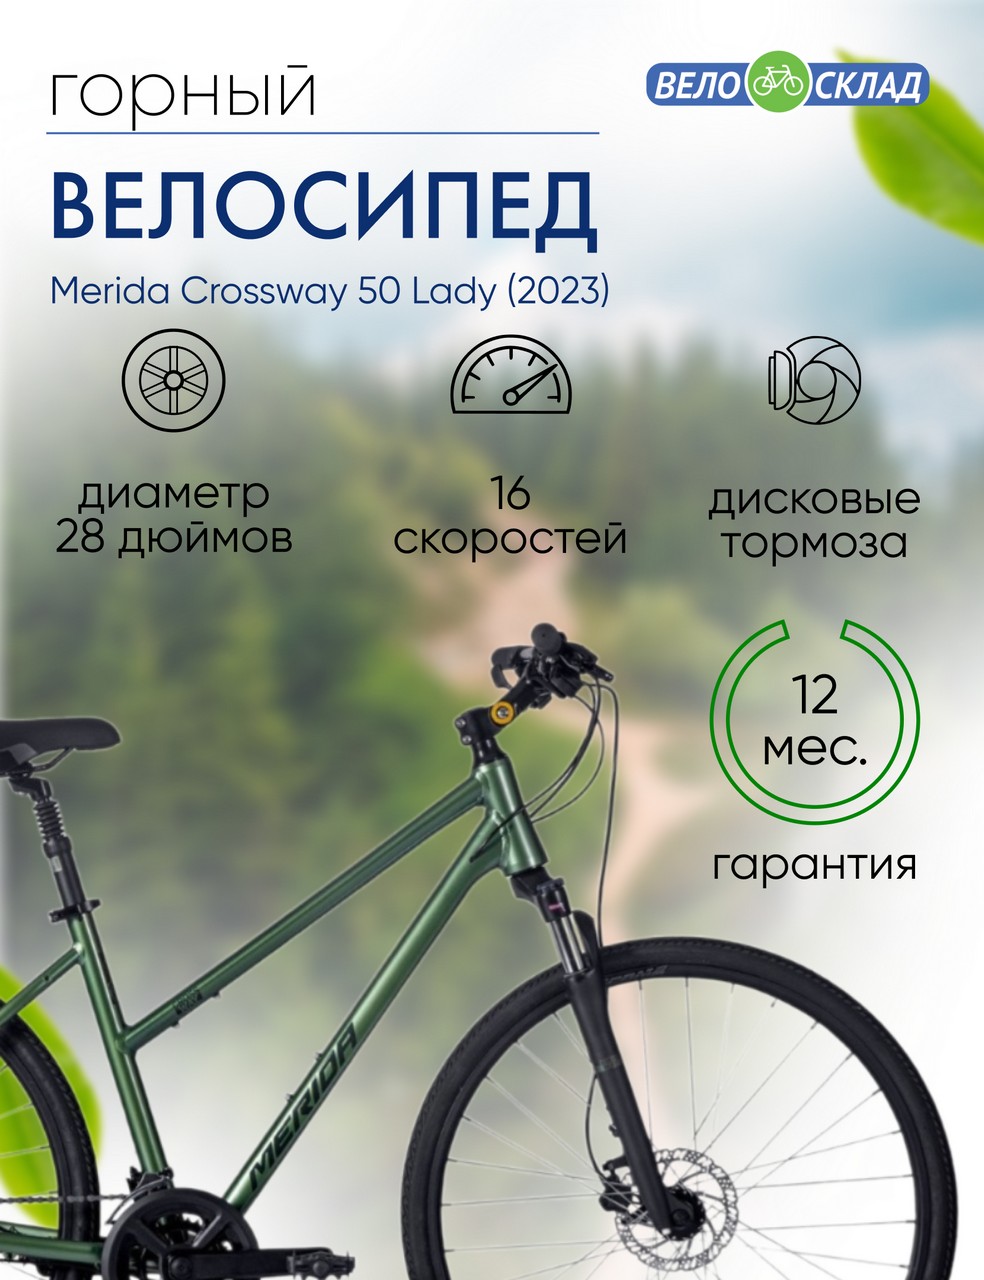 Женский велосипед Merida Crossway 50 Lady, год 2023, цвет Зеленый-Зеленый, ростовка 17